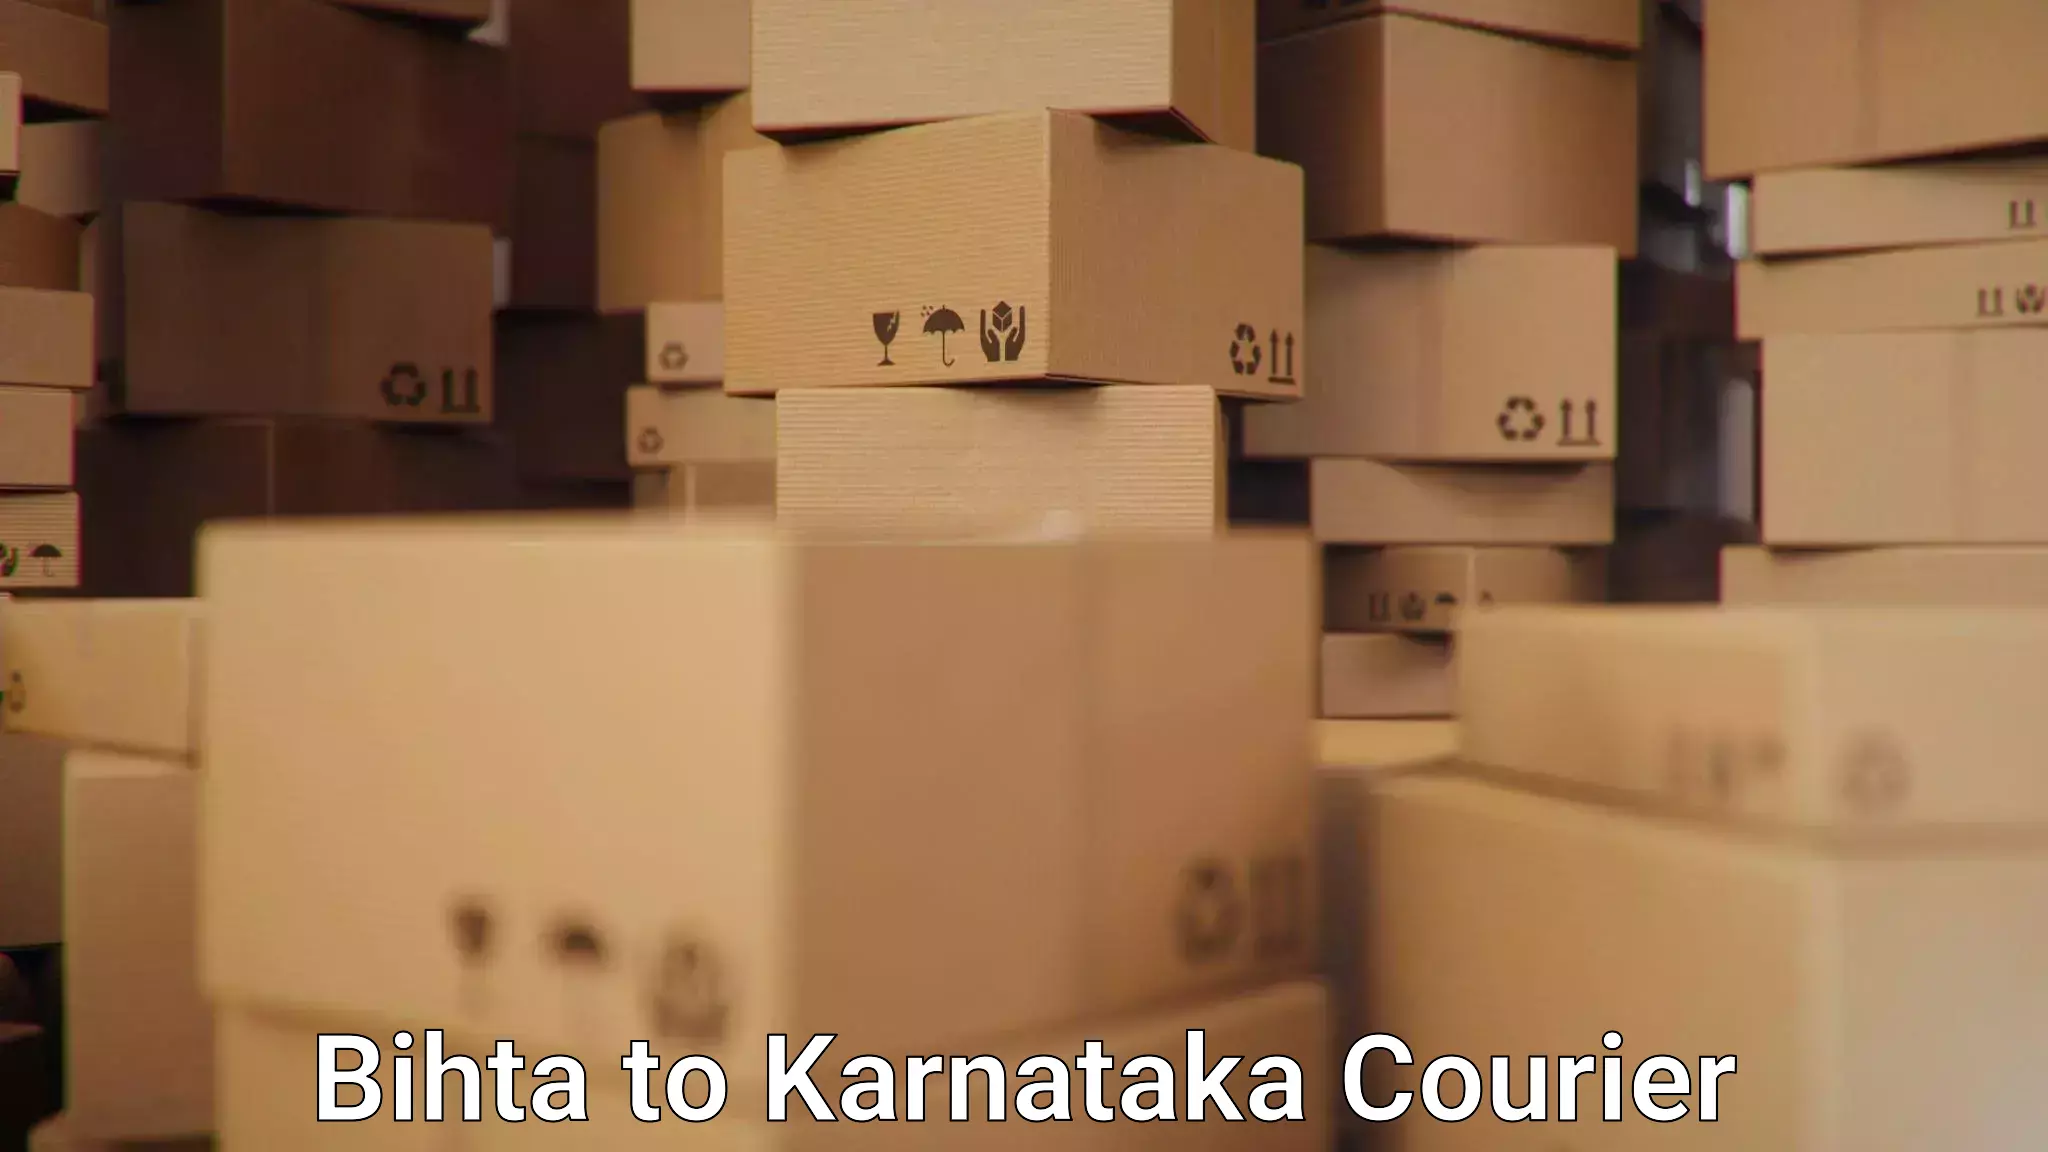 Logistics management Bihta to Karnataka